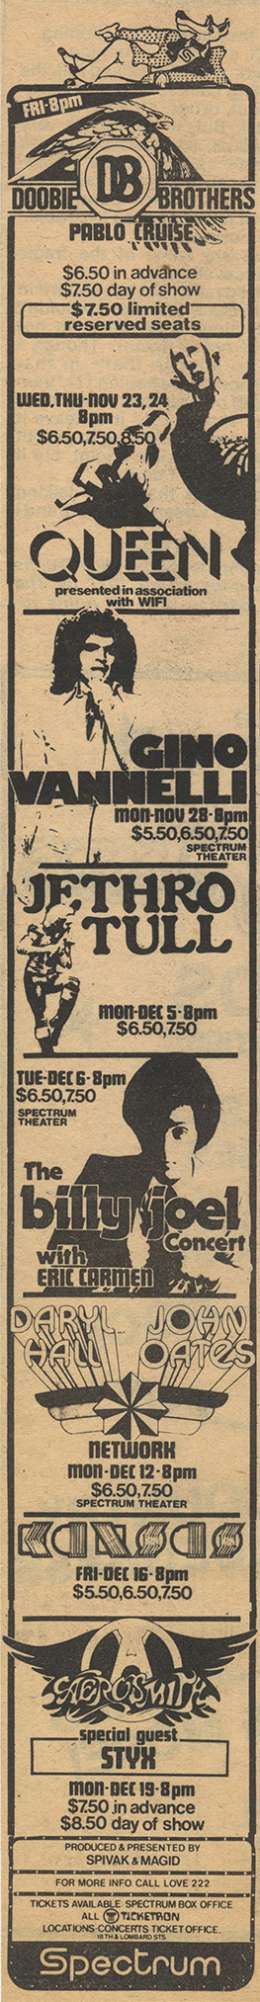 Flyer/ad - Queen in Philadelphia on 23.-24.11.1977